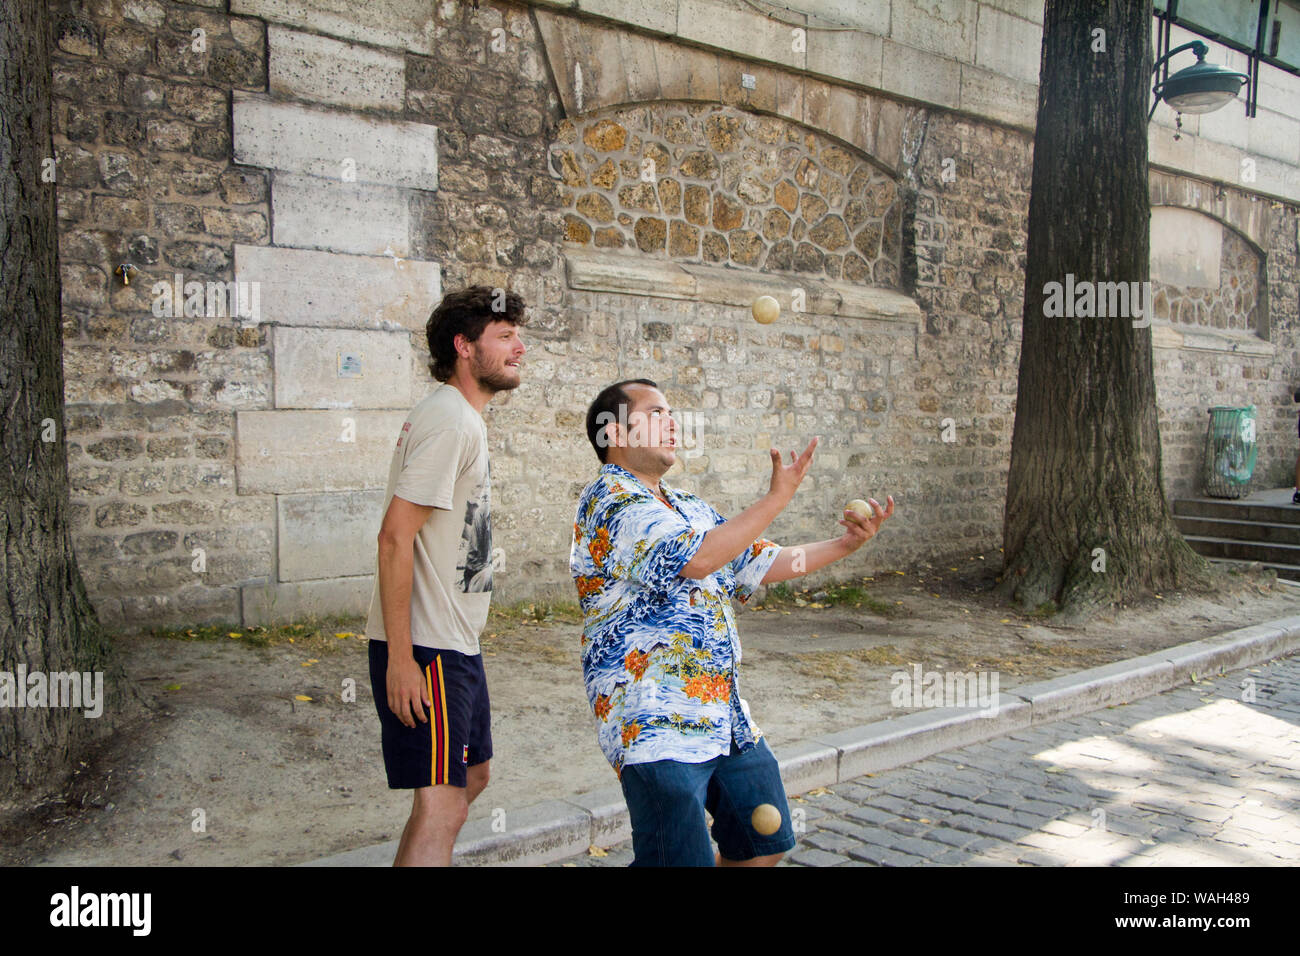 Paris, France - 07 juillet 2018 : deux hommes, un jongle avec une paire de boules blanches Banque D'Images